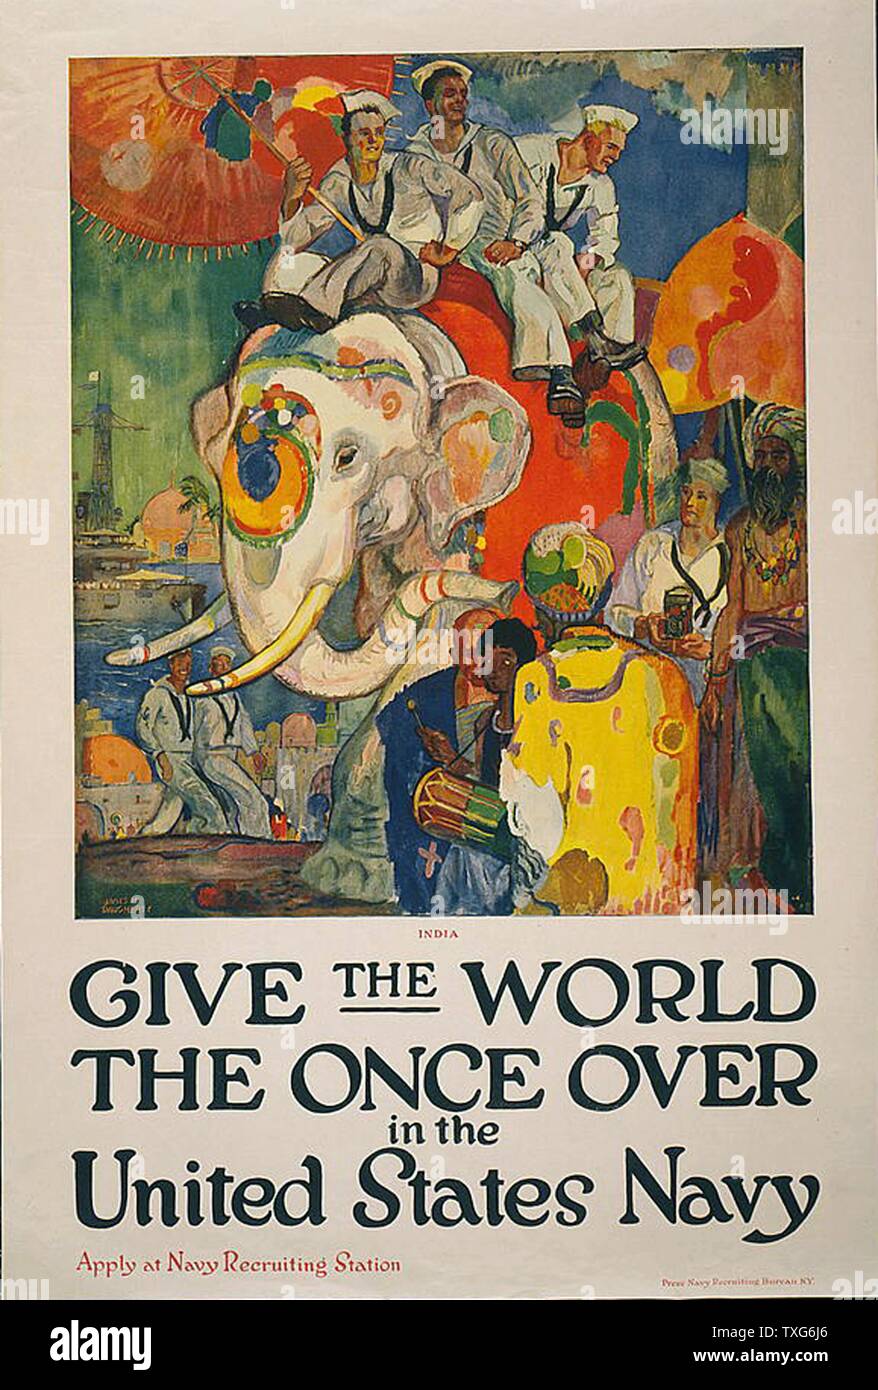 La prima guerra mondiale : USA Navy poster di assunzione " dare al mondo una volta oltre nella marina degli Stati Uniti' - American marinai essendo turisti in India, cavalcate un elefante, vedendo i monumenti, e scattare fotografie litografia Foto Stock